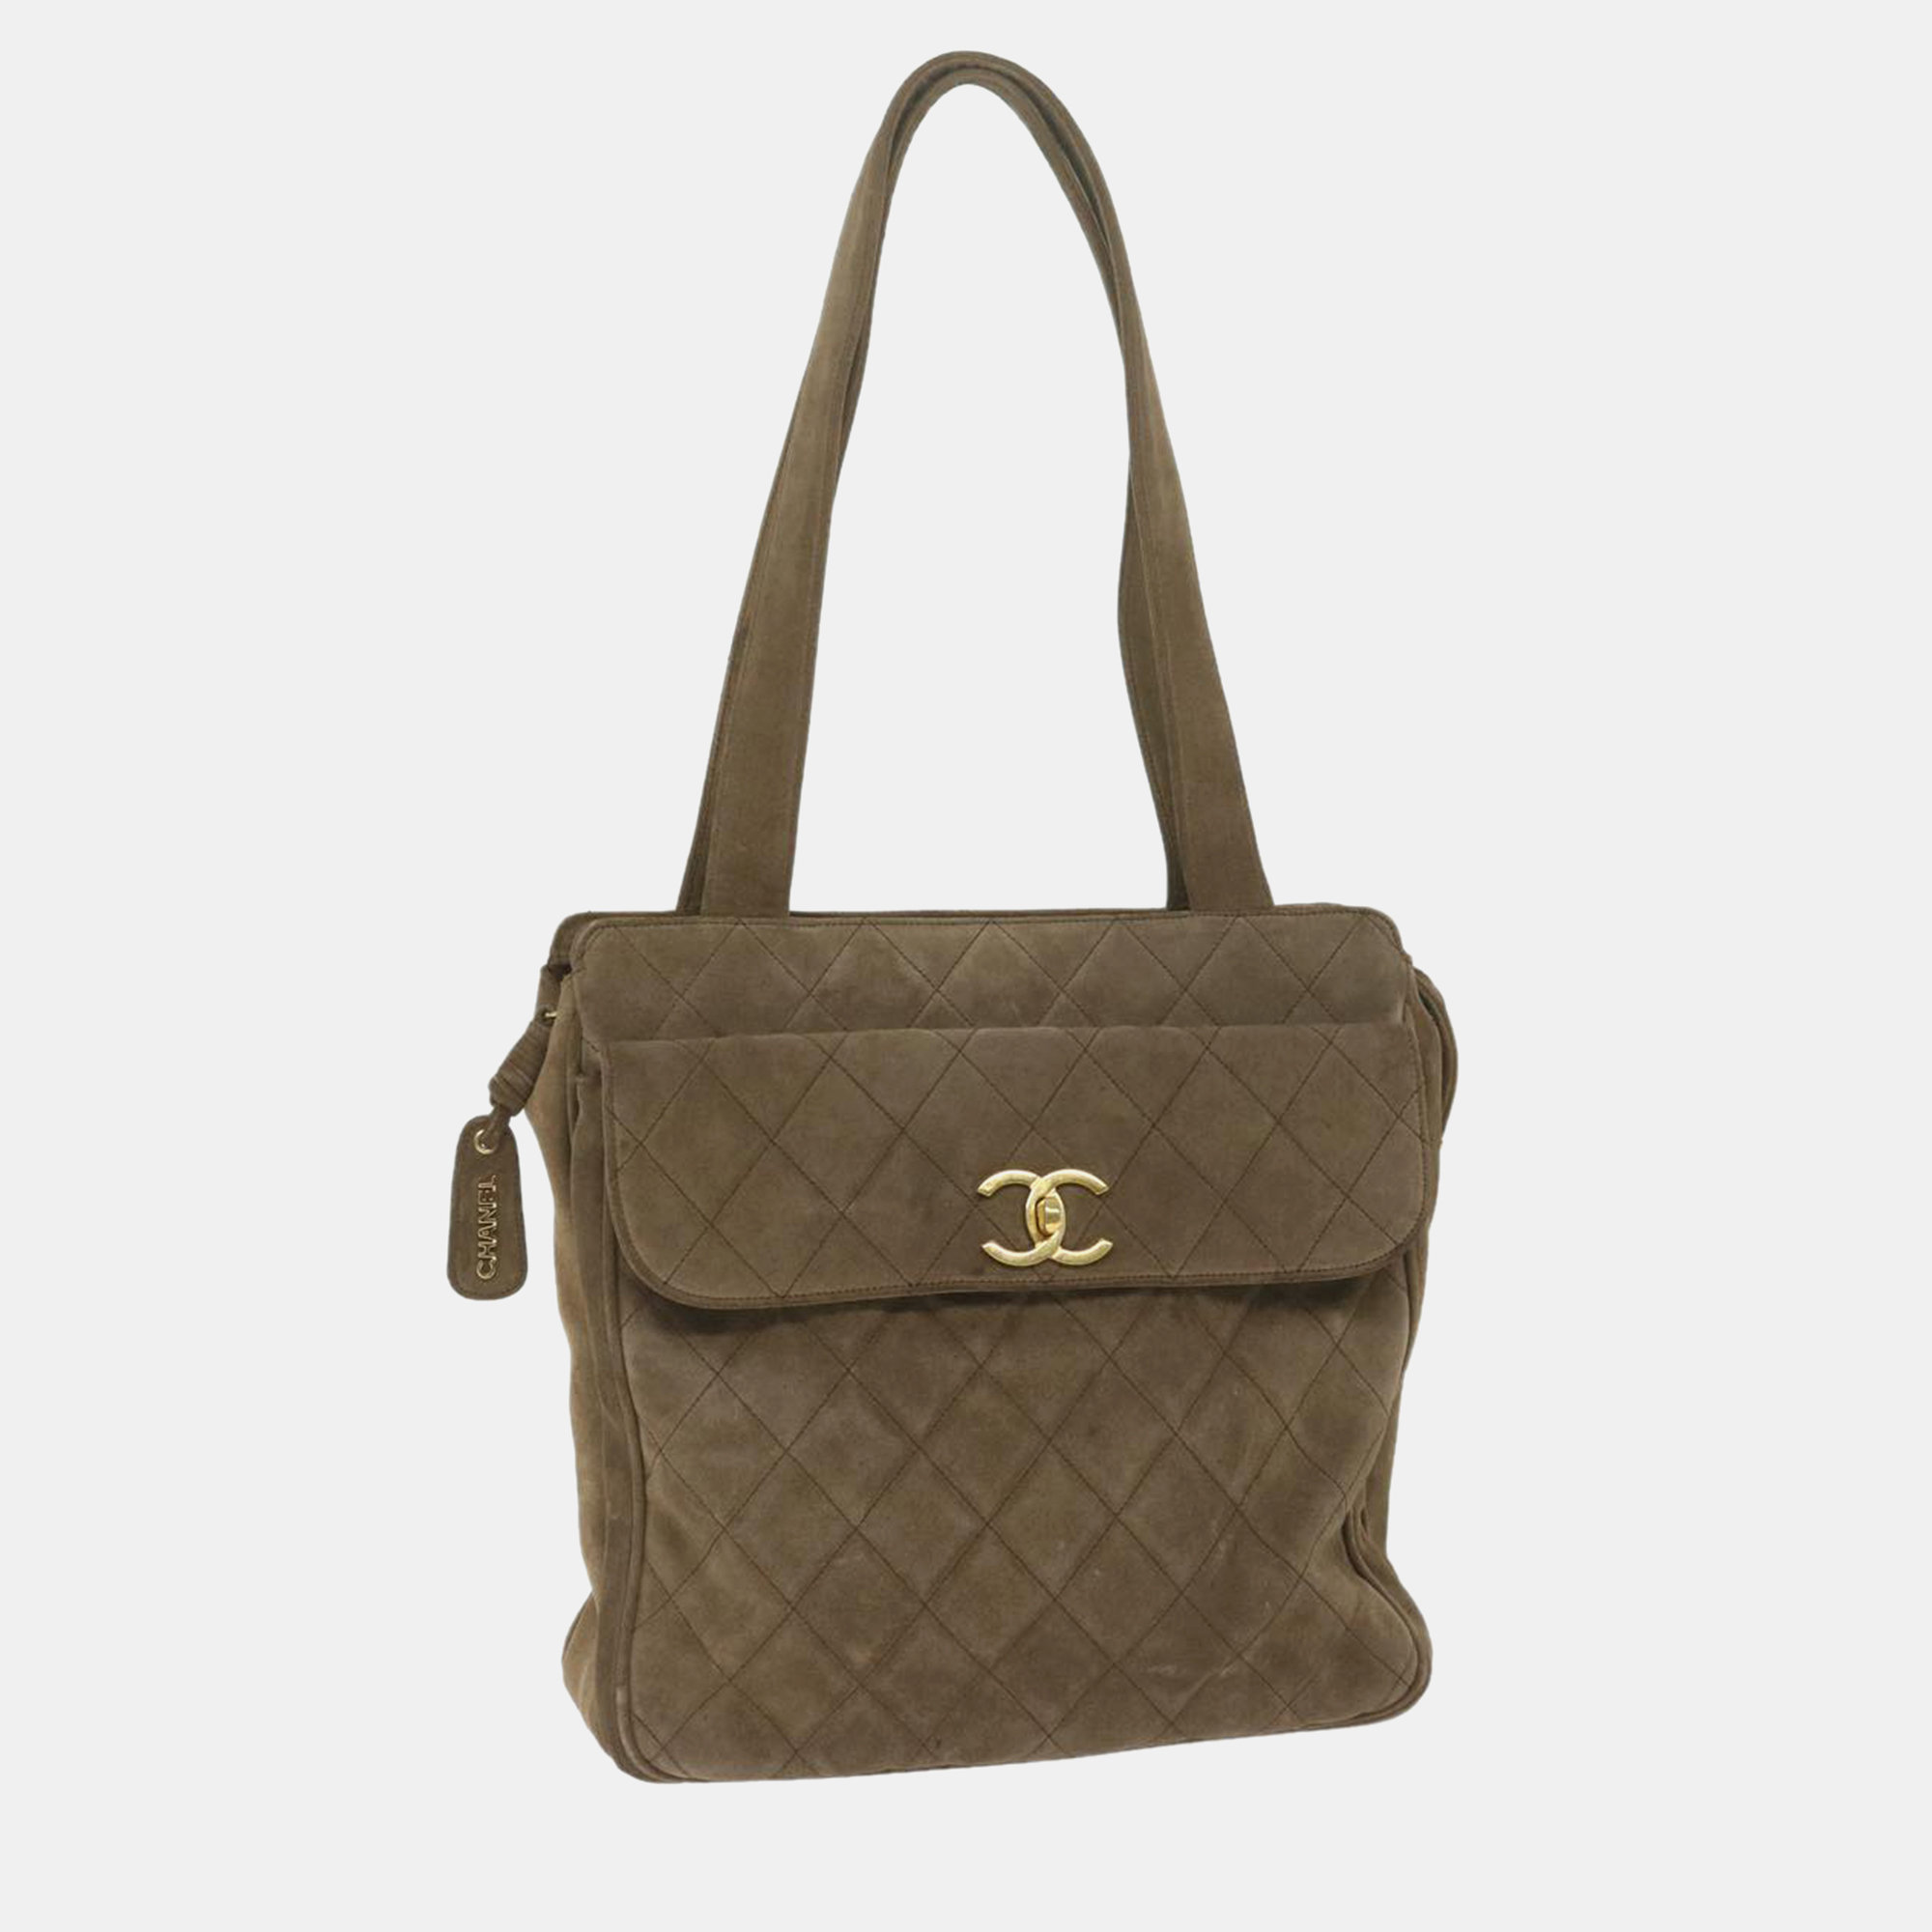 Chanel brown suede pocket cc shoulder bag